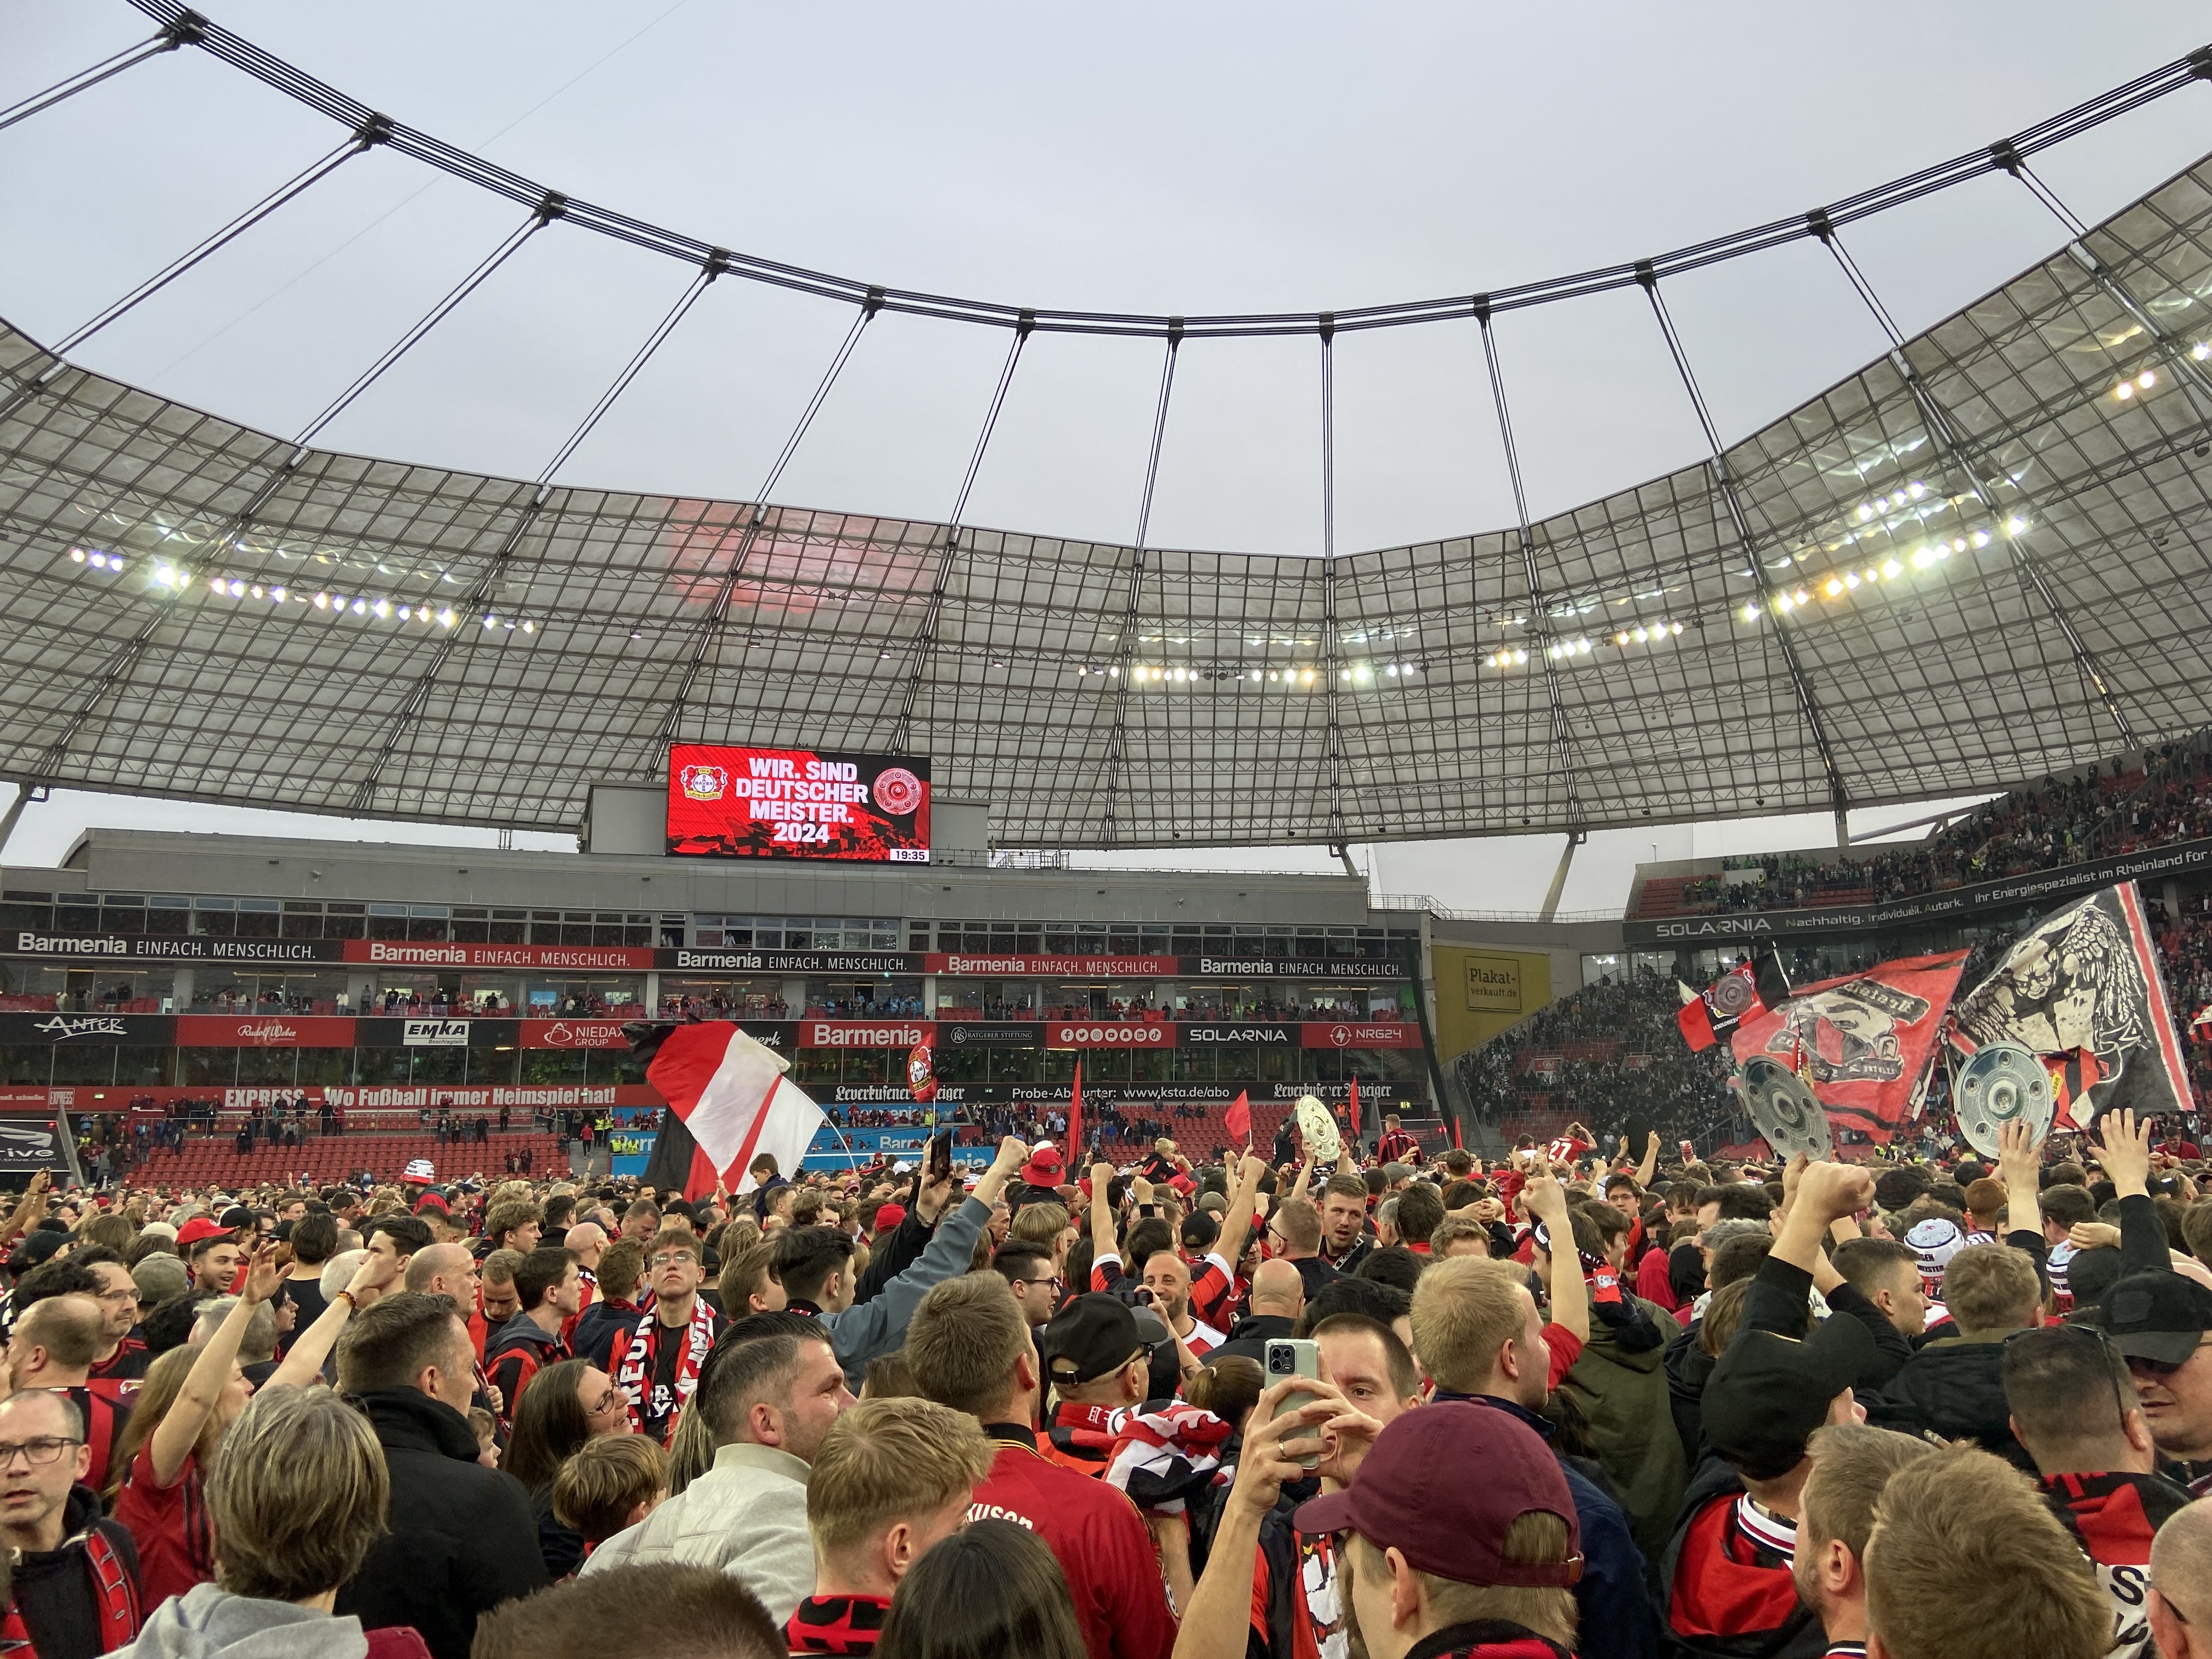 Bayer Leverkusen ist erstmals in der 120-jährigen Vereinsgeschichte Meister in der Fußball-Bundesliga geworden. Thorben Siewer stand in dem entscheidenden Spiel an der Seitenlinie. von Nils Dinkel